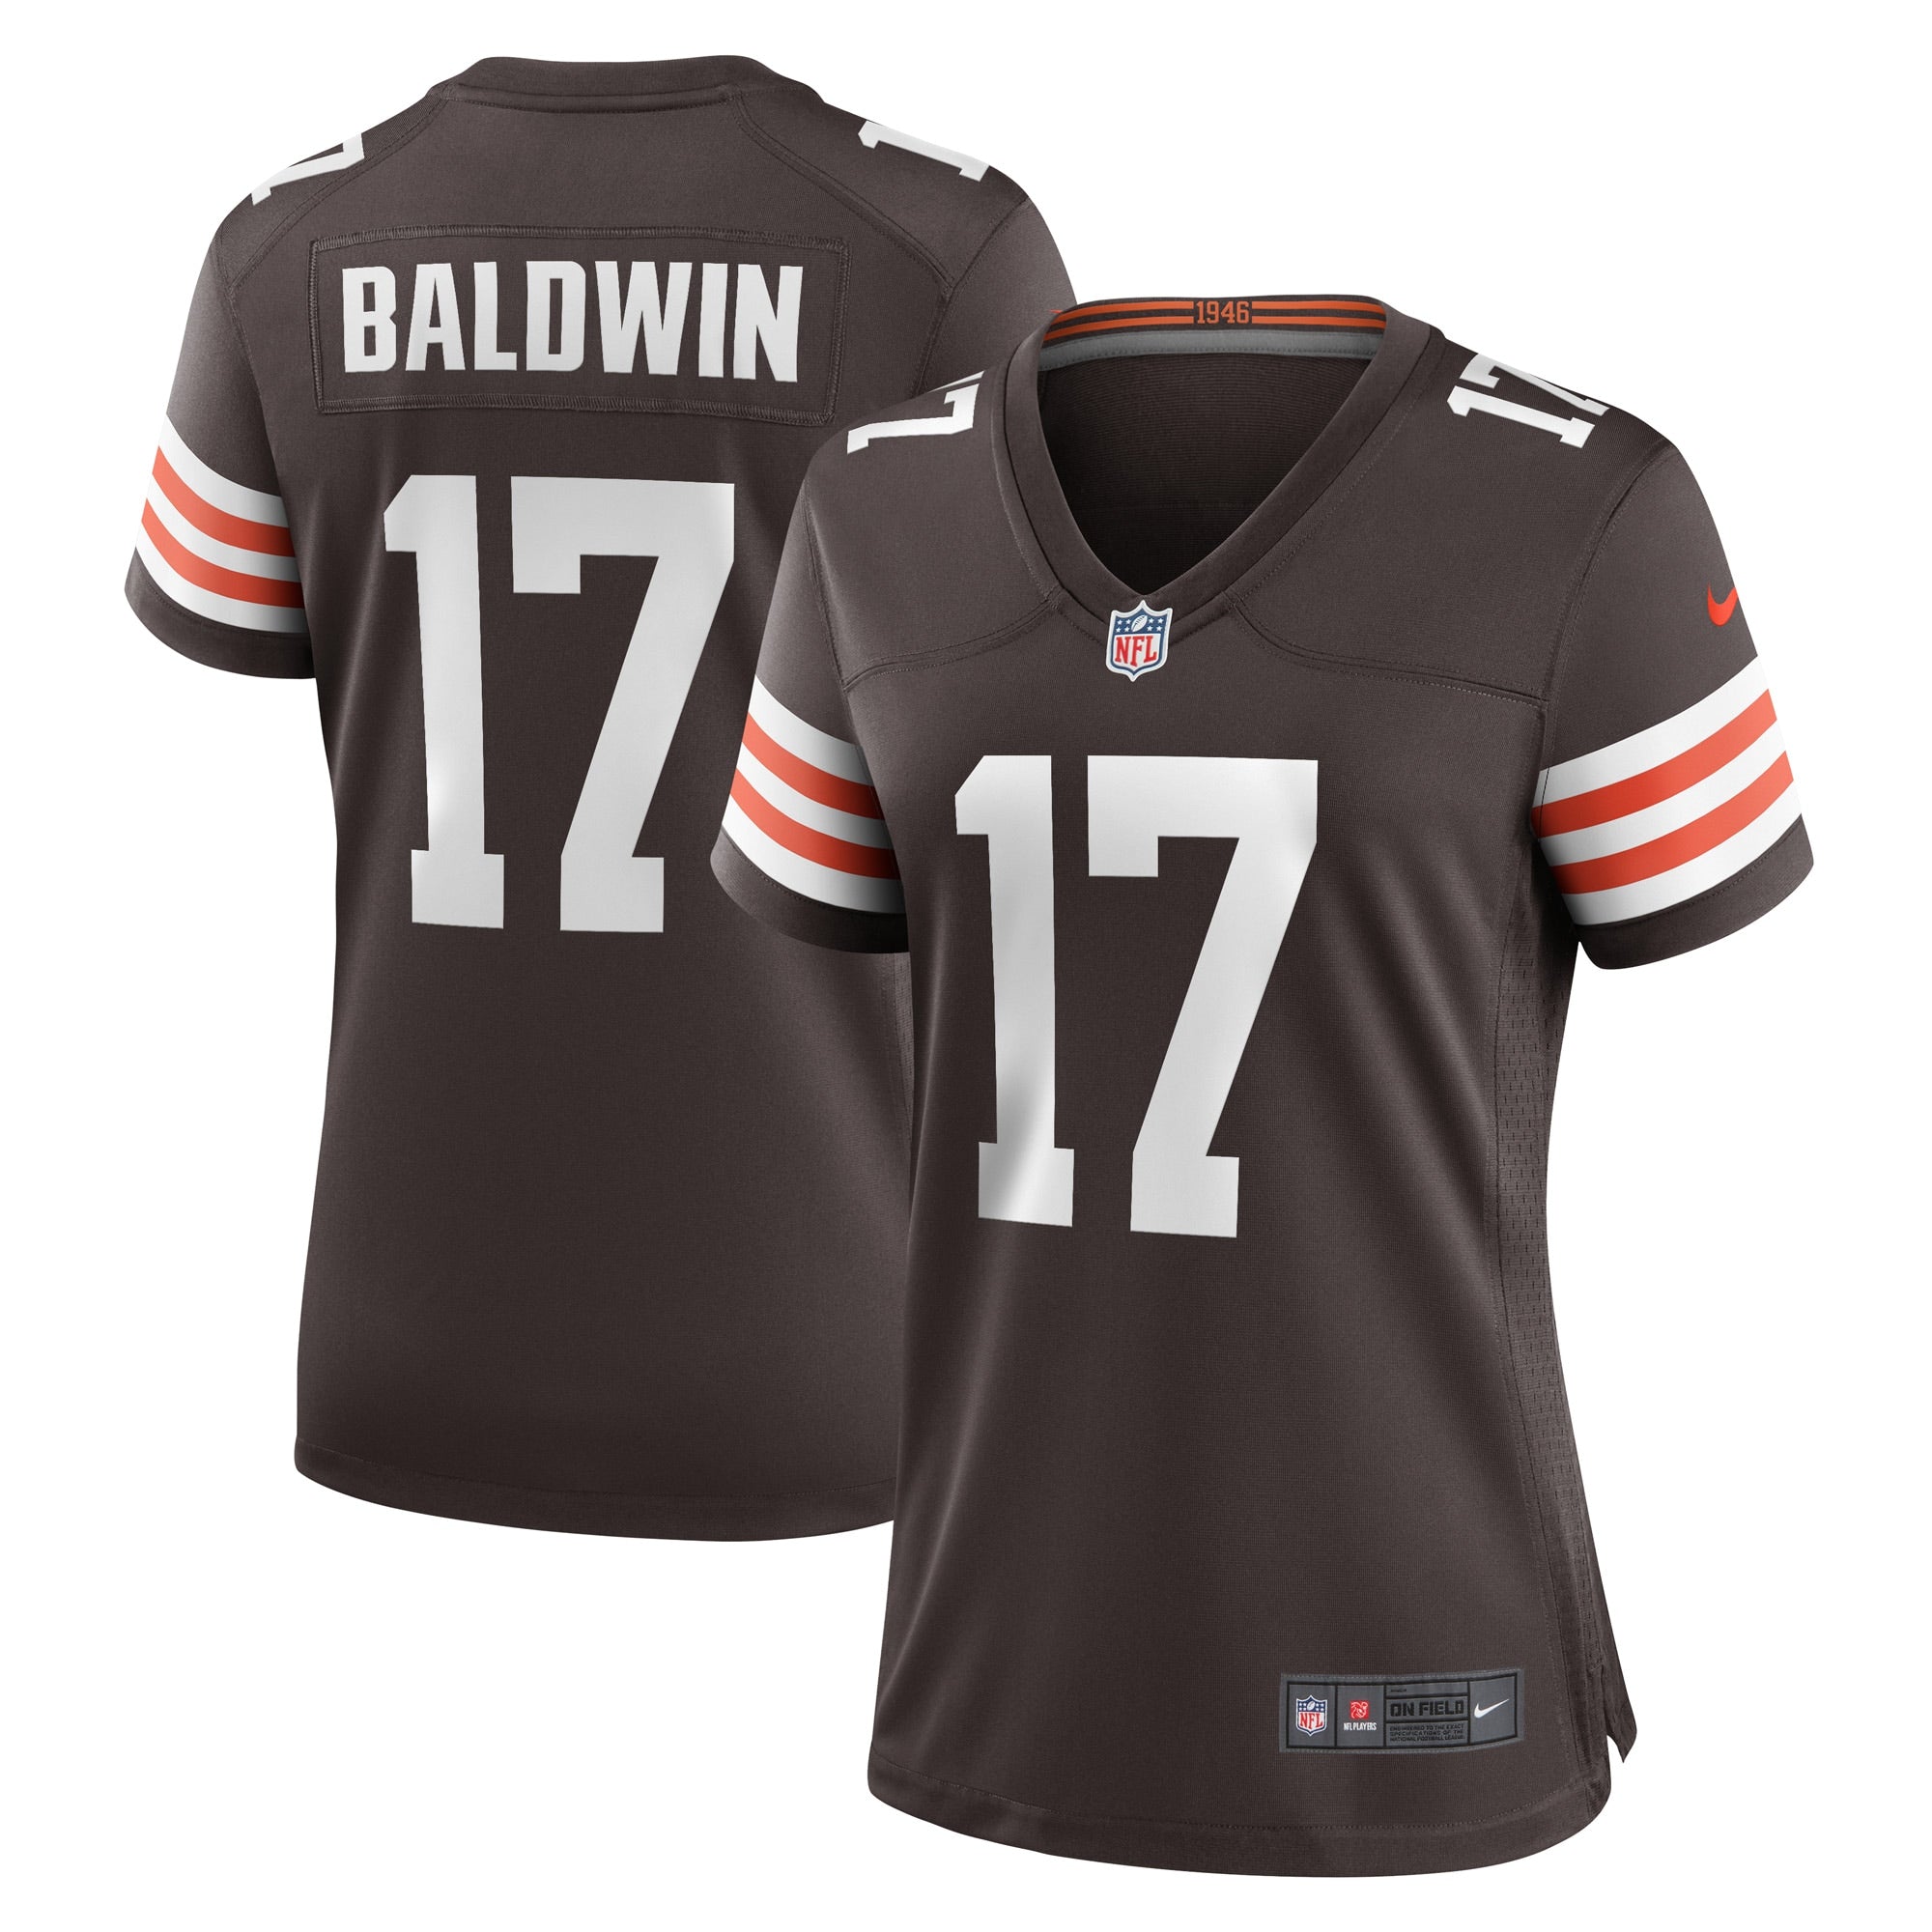 Baldwin Daylen home jersey